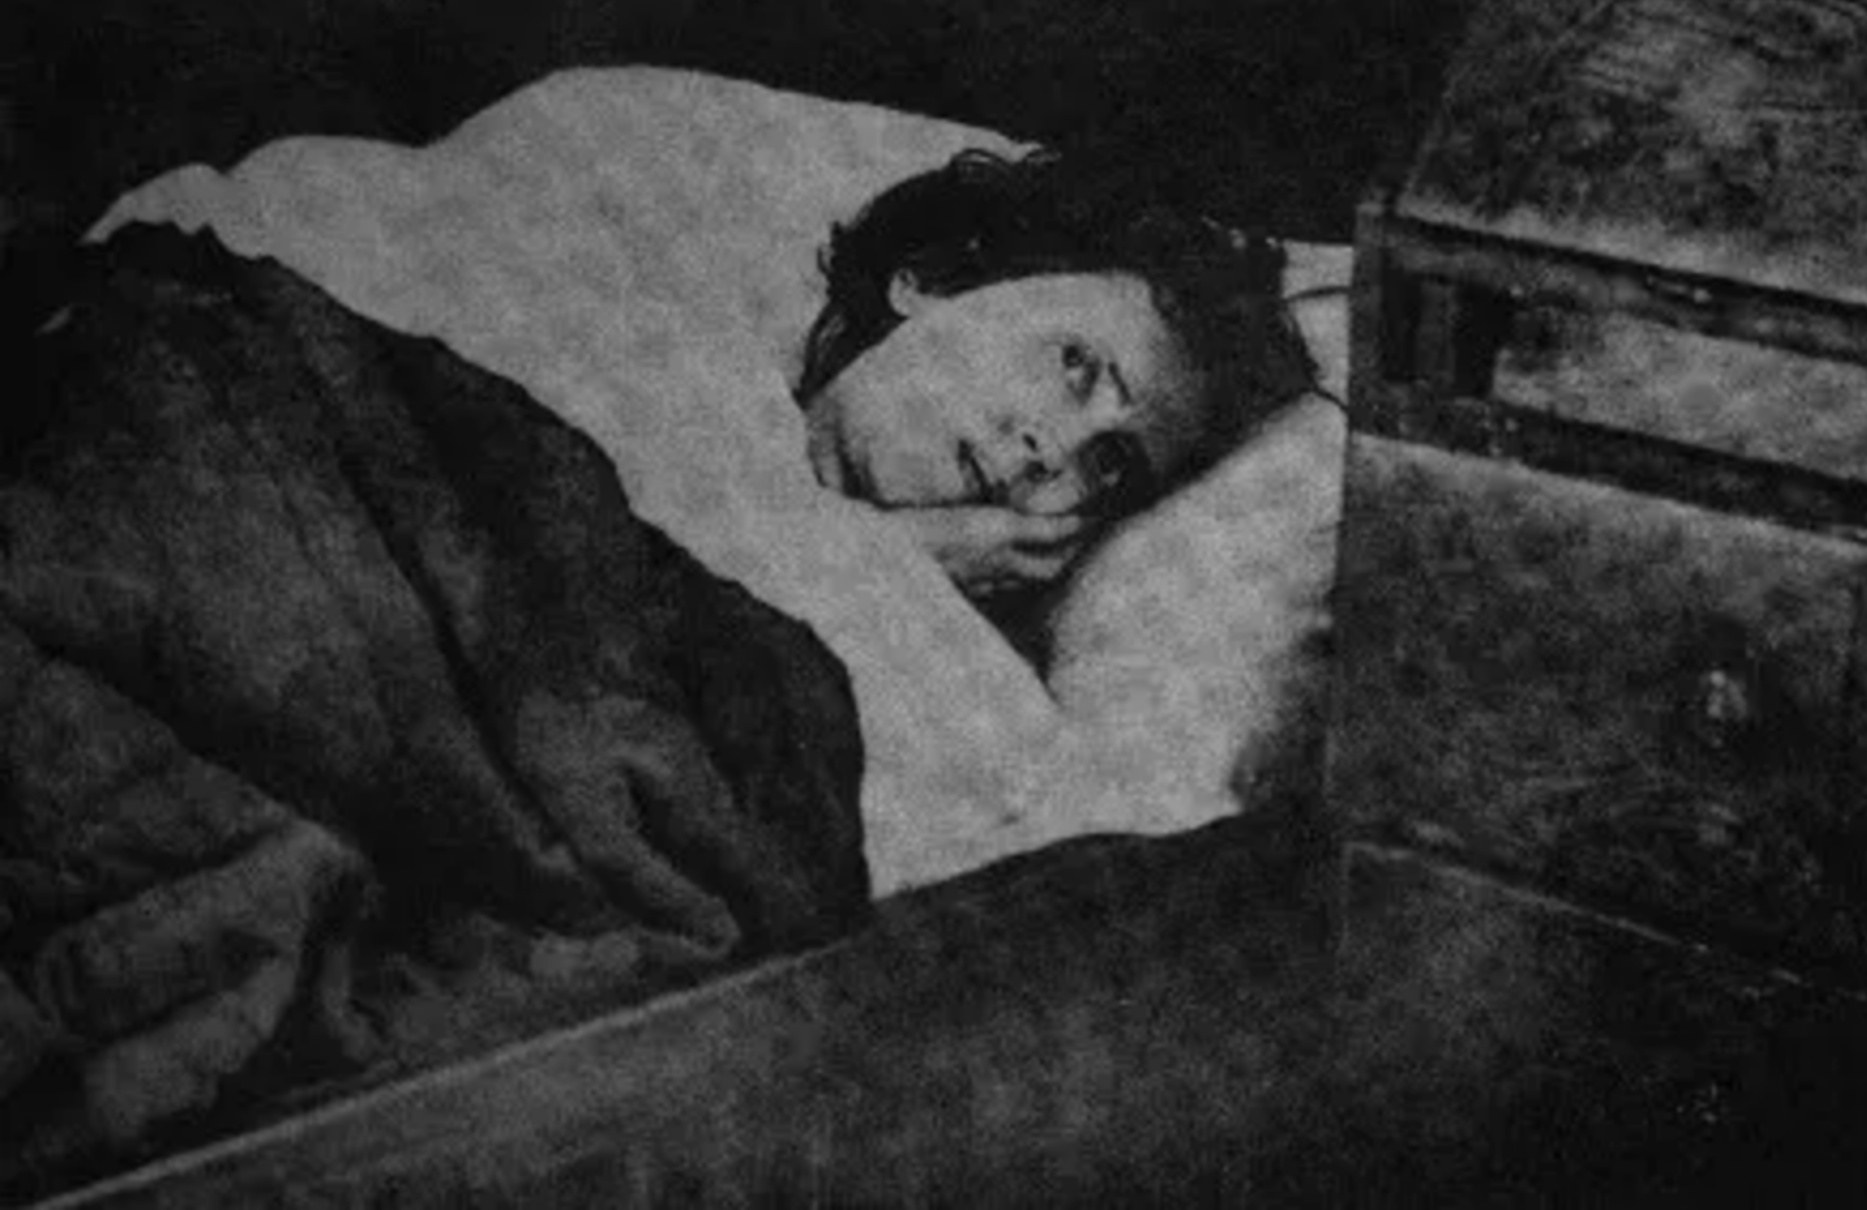 Karolina Olsson (29. oktober 1861 – 5. april 1950), også kendt som "Soverskan på Oknö" ("Oknös sovende"), var en svensk kvinde, der angiveligt forblev i dvale mellem 1876 og 1908 (32 år). Dette menes at være den længste tid, nogen har levet på denne måde, som derefter vågnede uden tilbageværende symptomer.